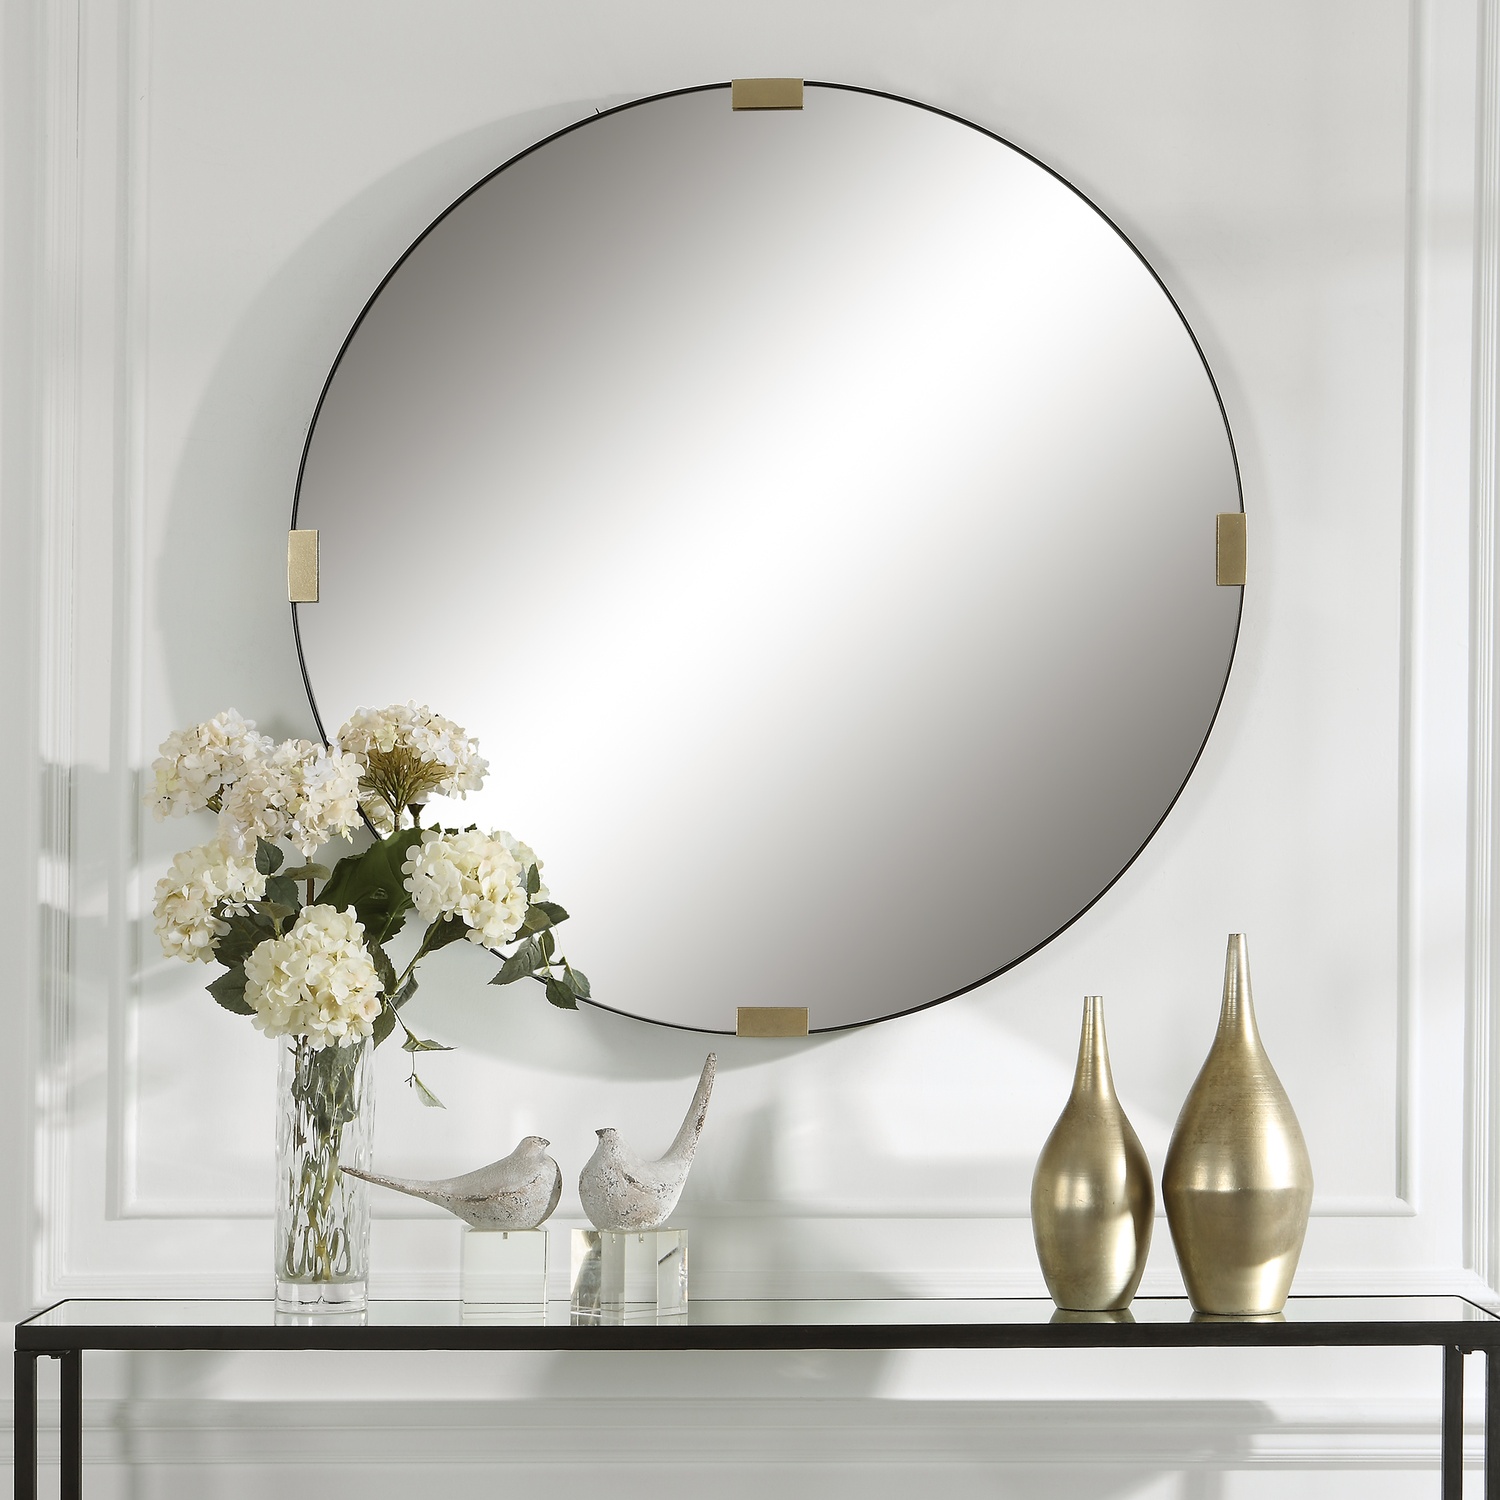 Clip-Modern Round Mirror